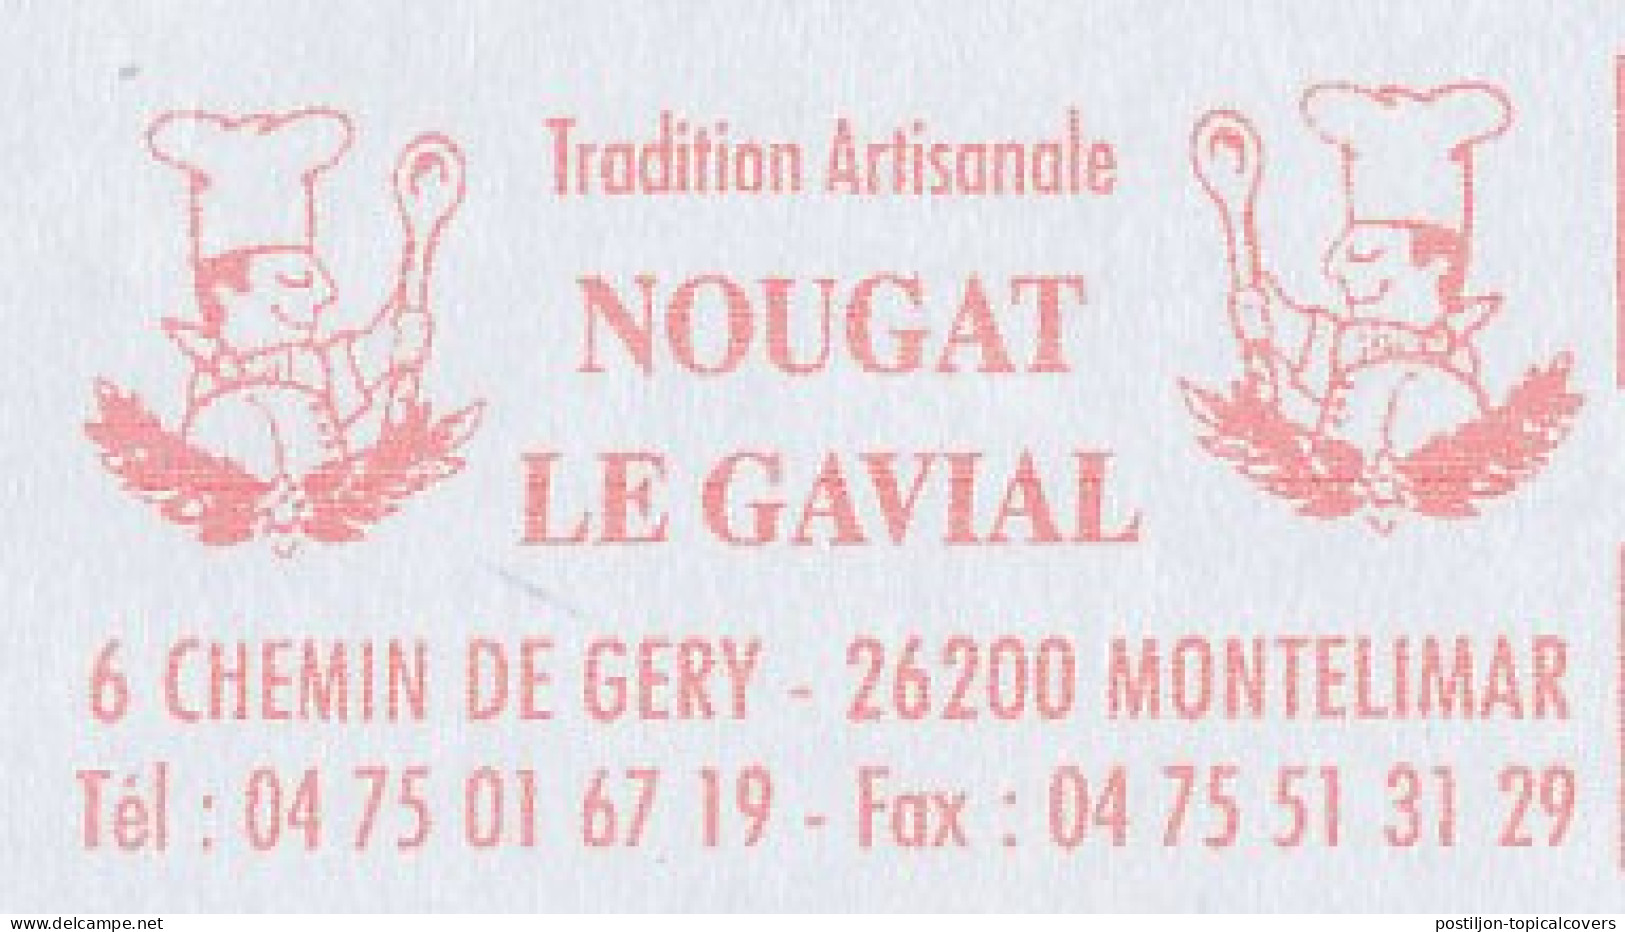 Meter Cover France 2002 Nougat - Nuts - Alimentation